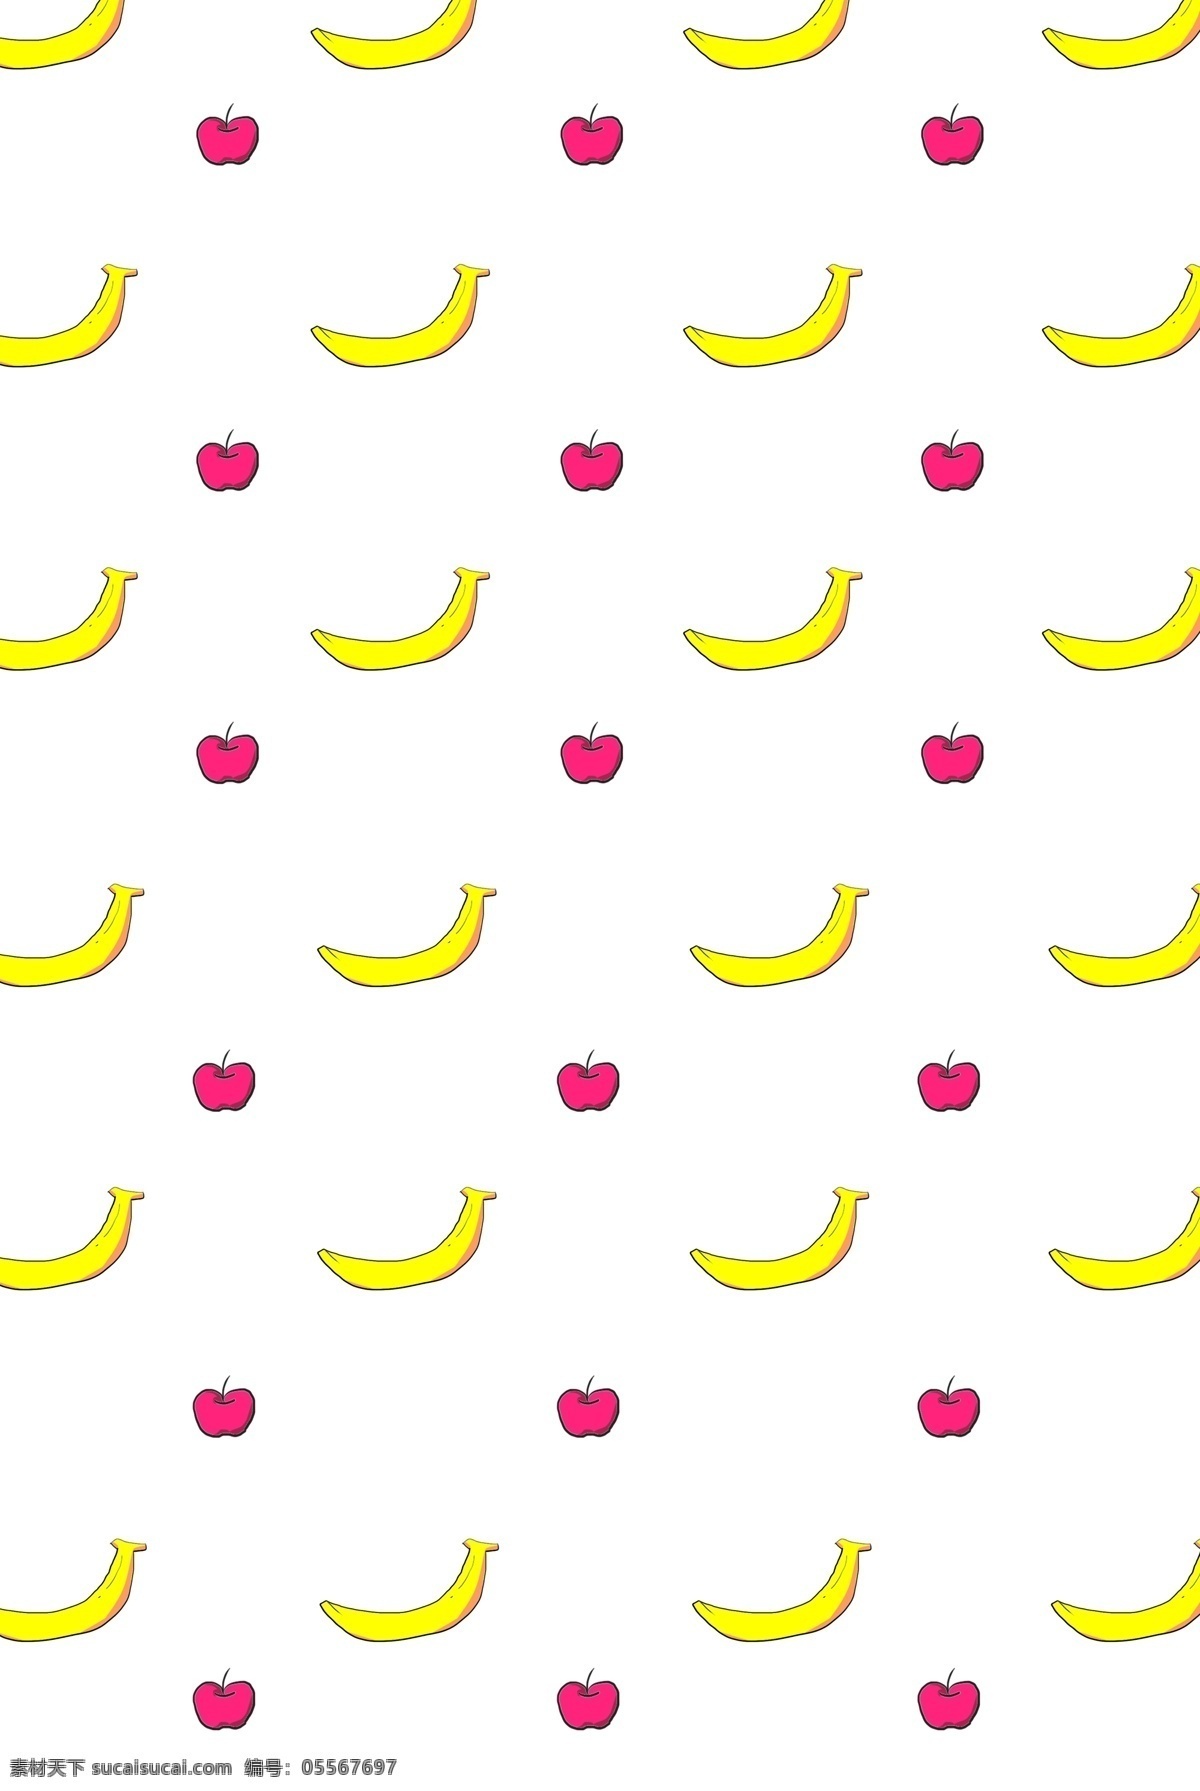 香蕉苹果 背景 底纹 水果背景 香蕉背景 红苹果 插图 苹果背景 背景插图 水果 插画